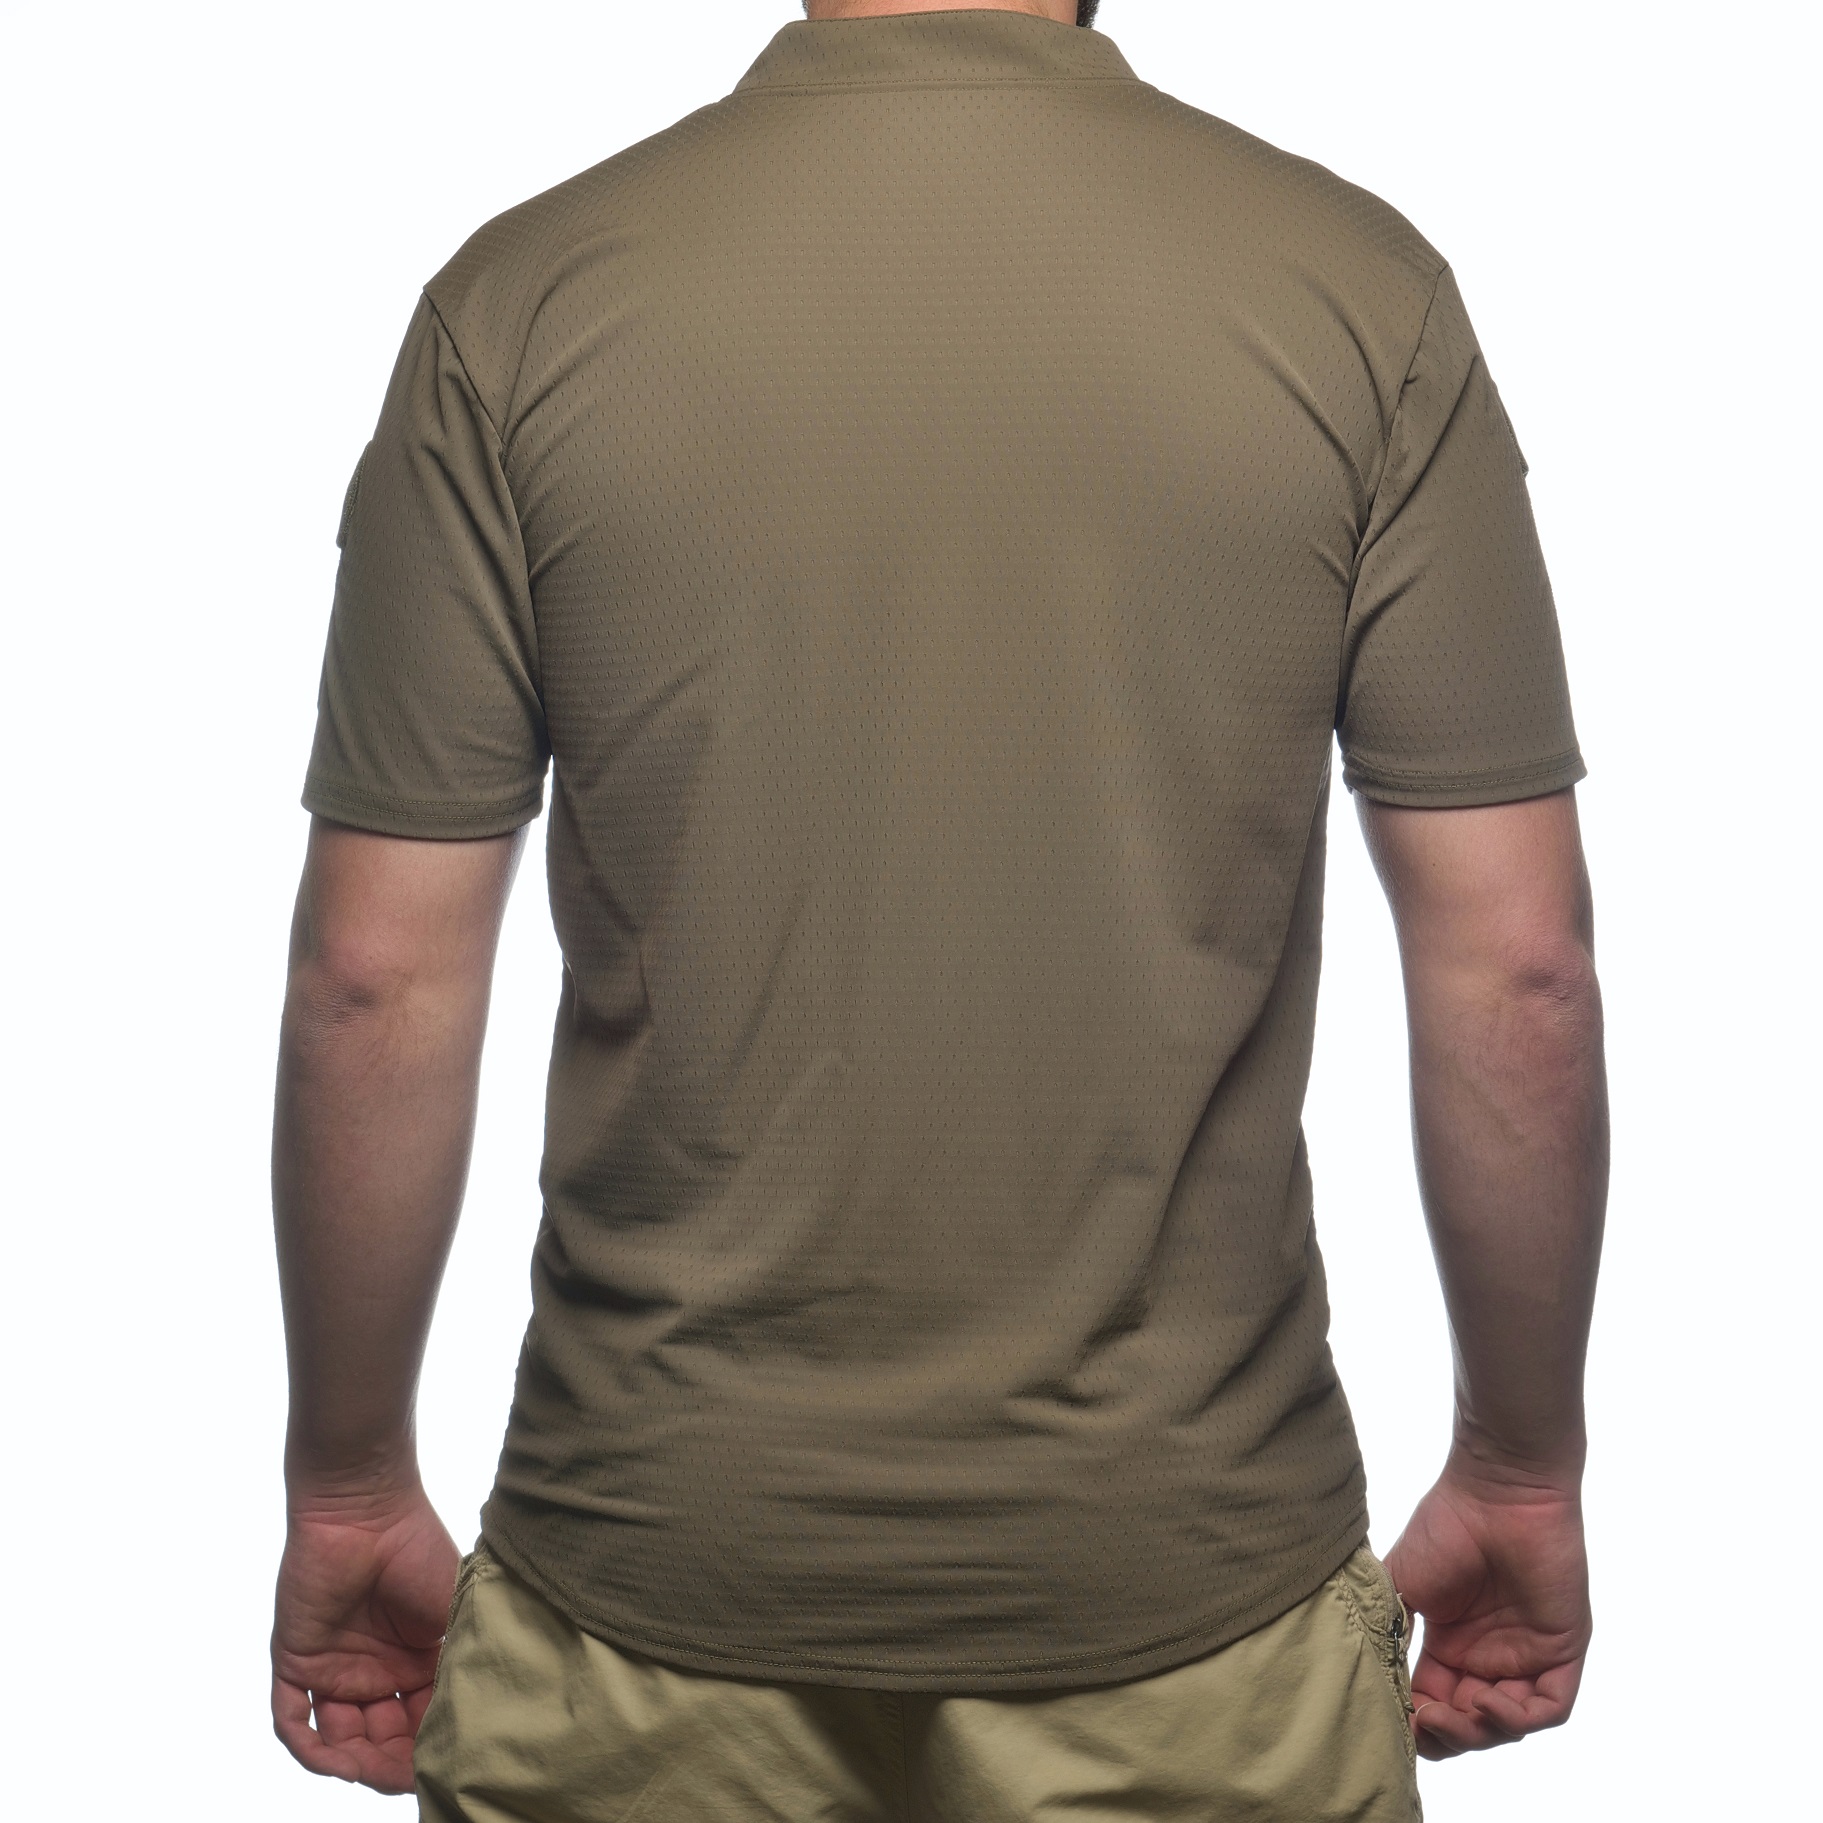 BOSS Rugby shirt S/S Ranger Green, Medium